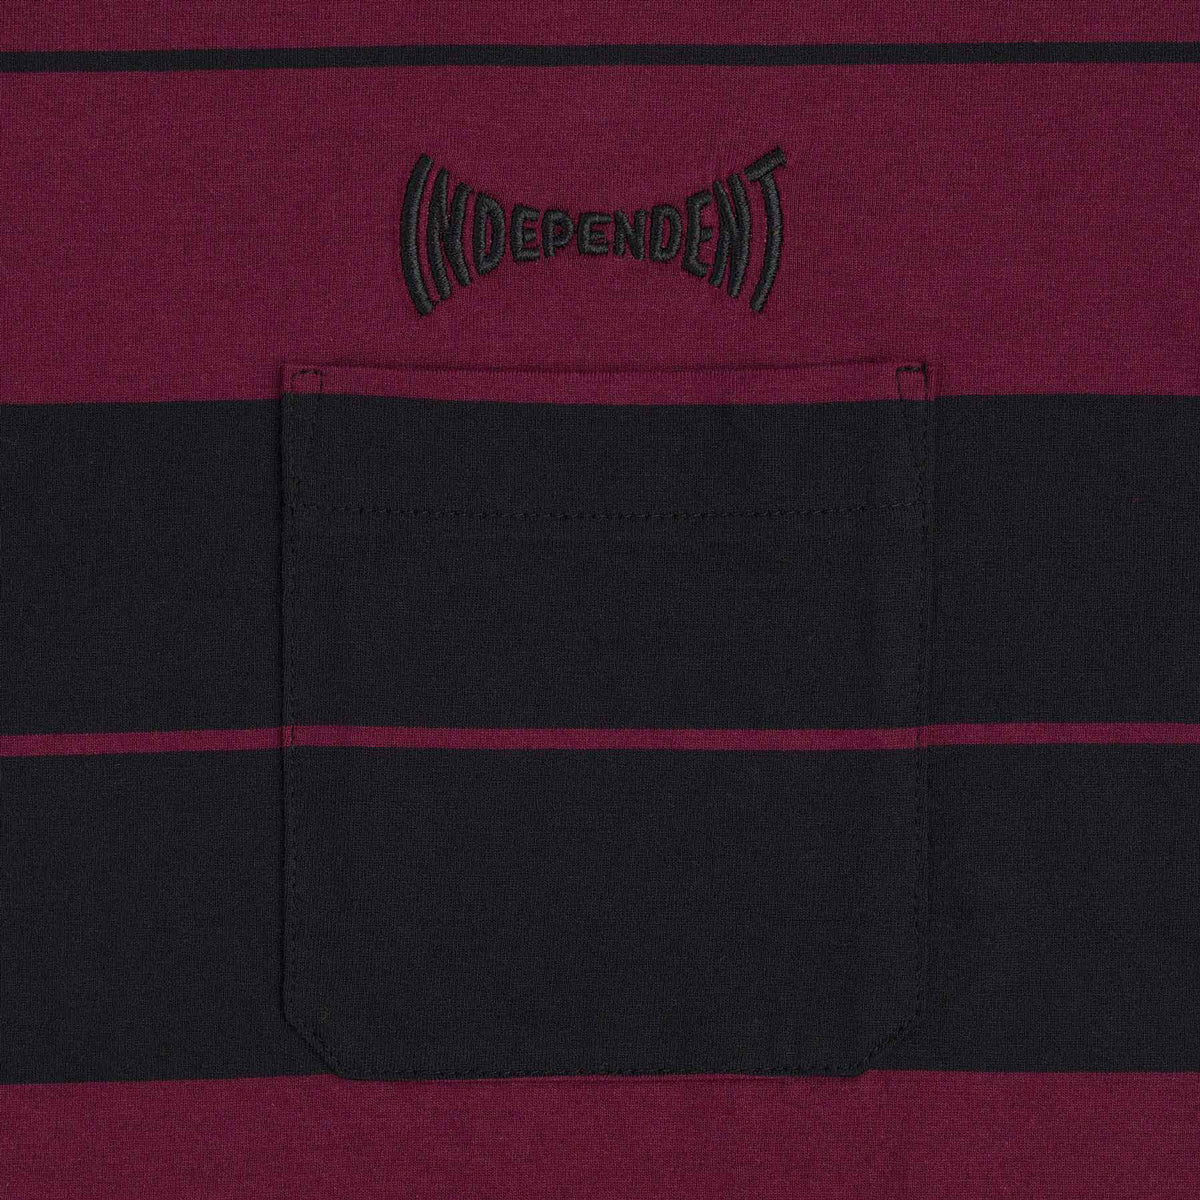 Independent Osage Pocket T-Shirt - Maroon/Black image 2